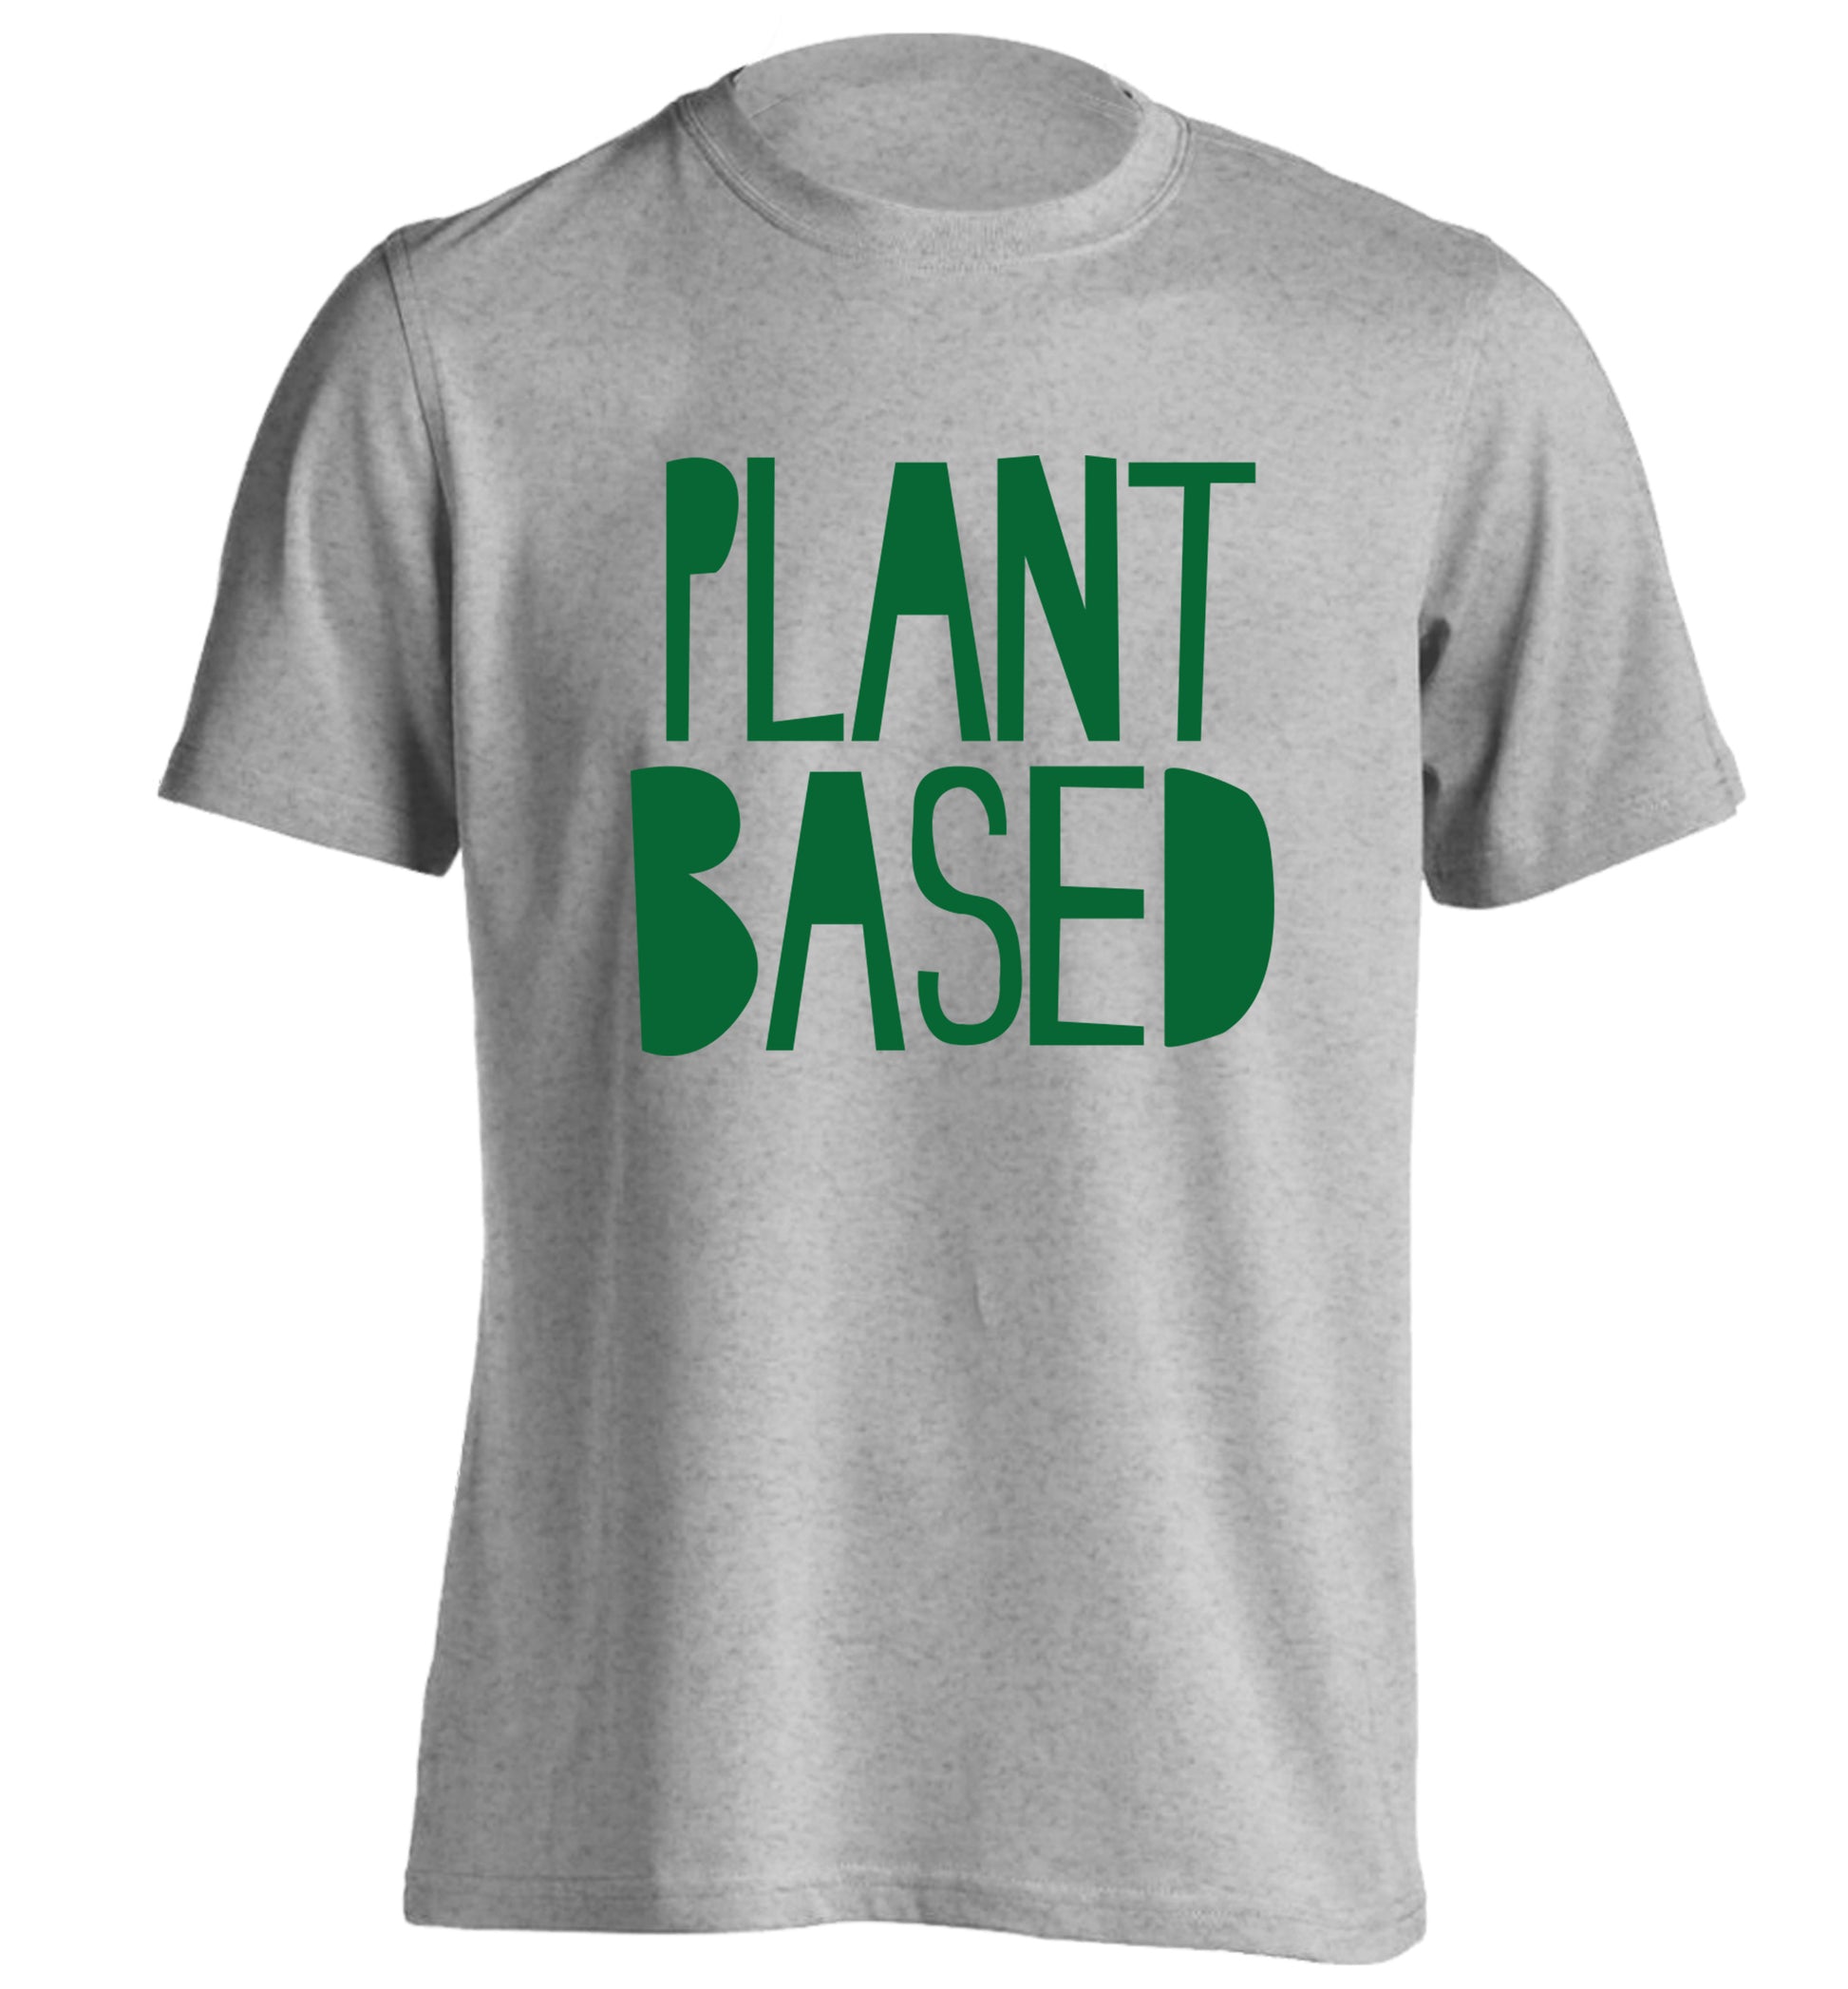 Plant Based adults unisex grey Tshirt 2XL